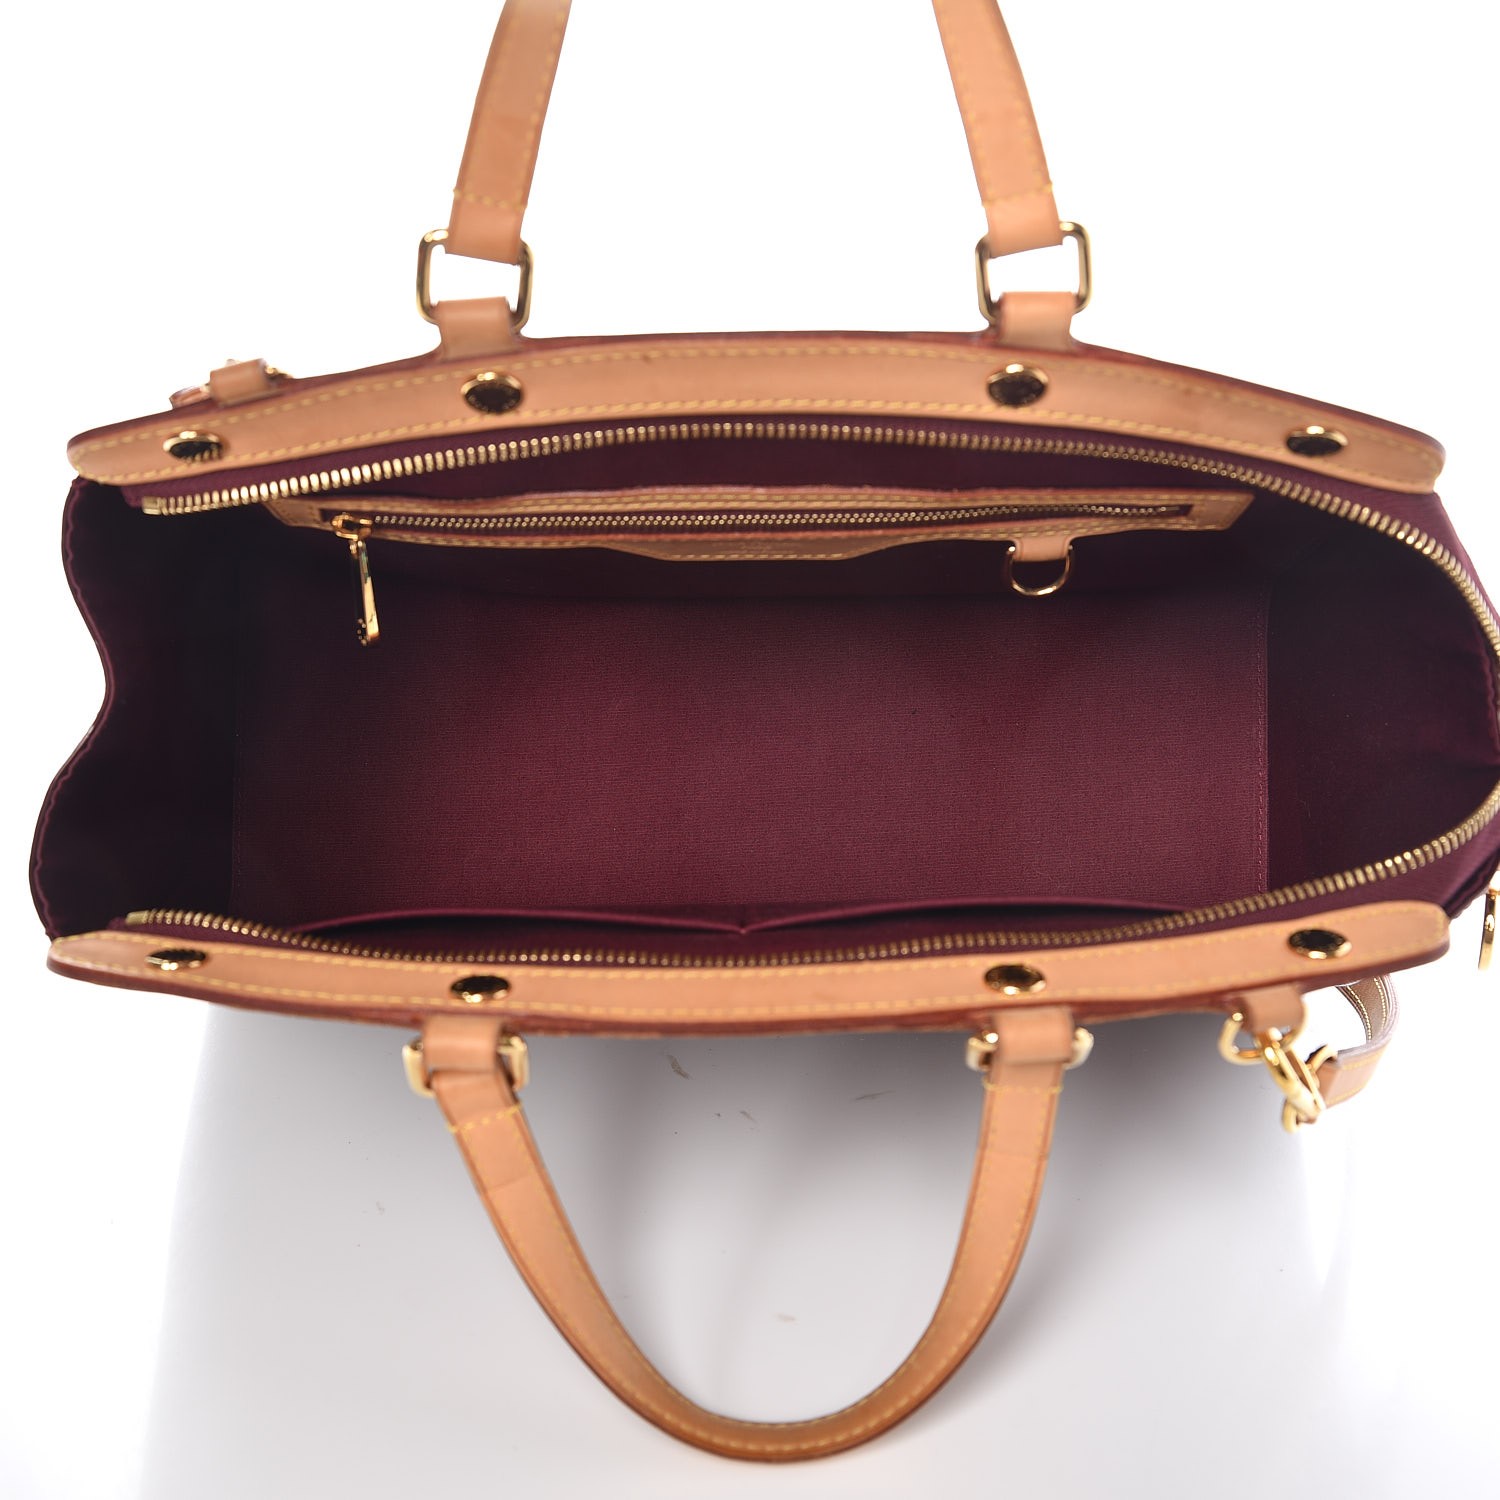 Louis Vuitton Vernis Brea Rouge Fauviste MM Bag